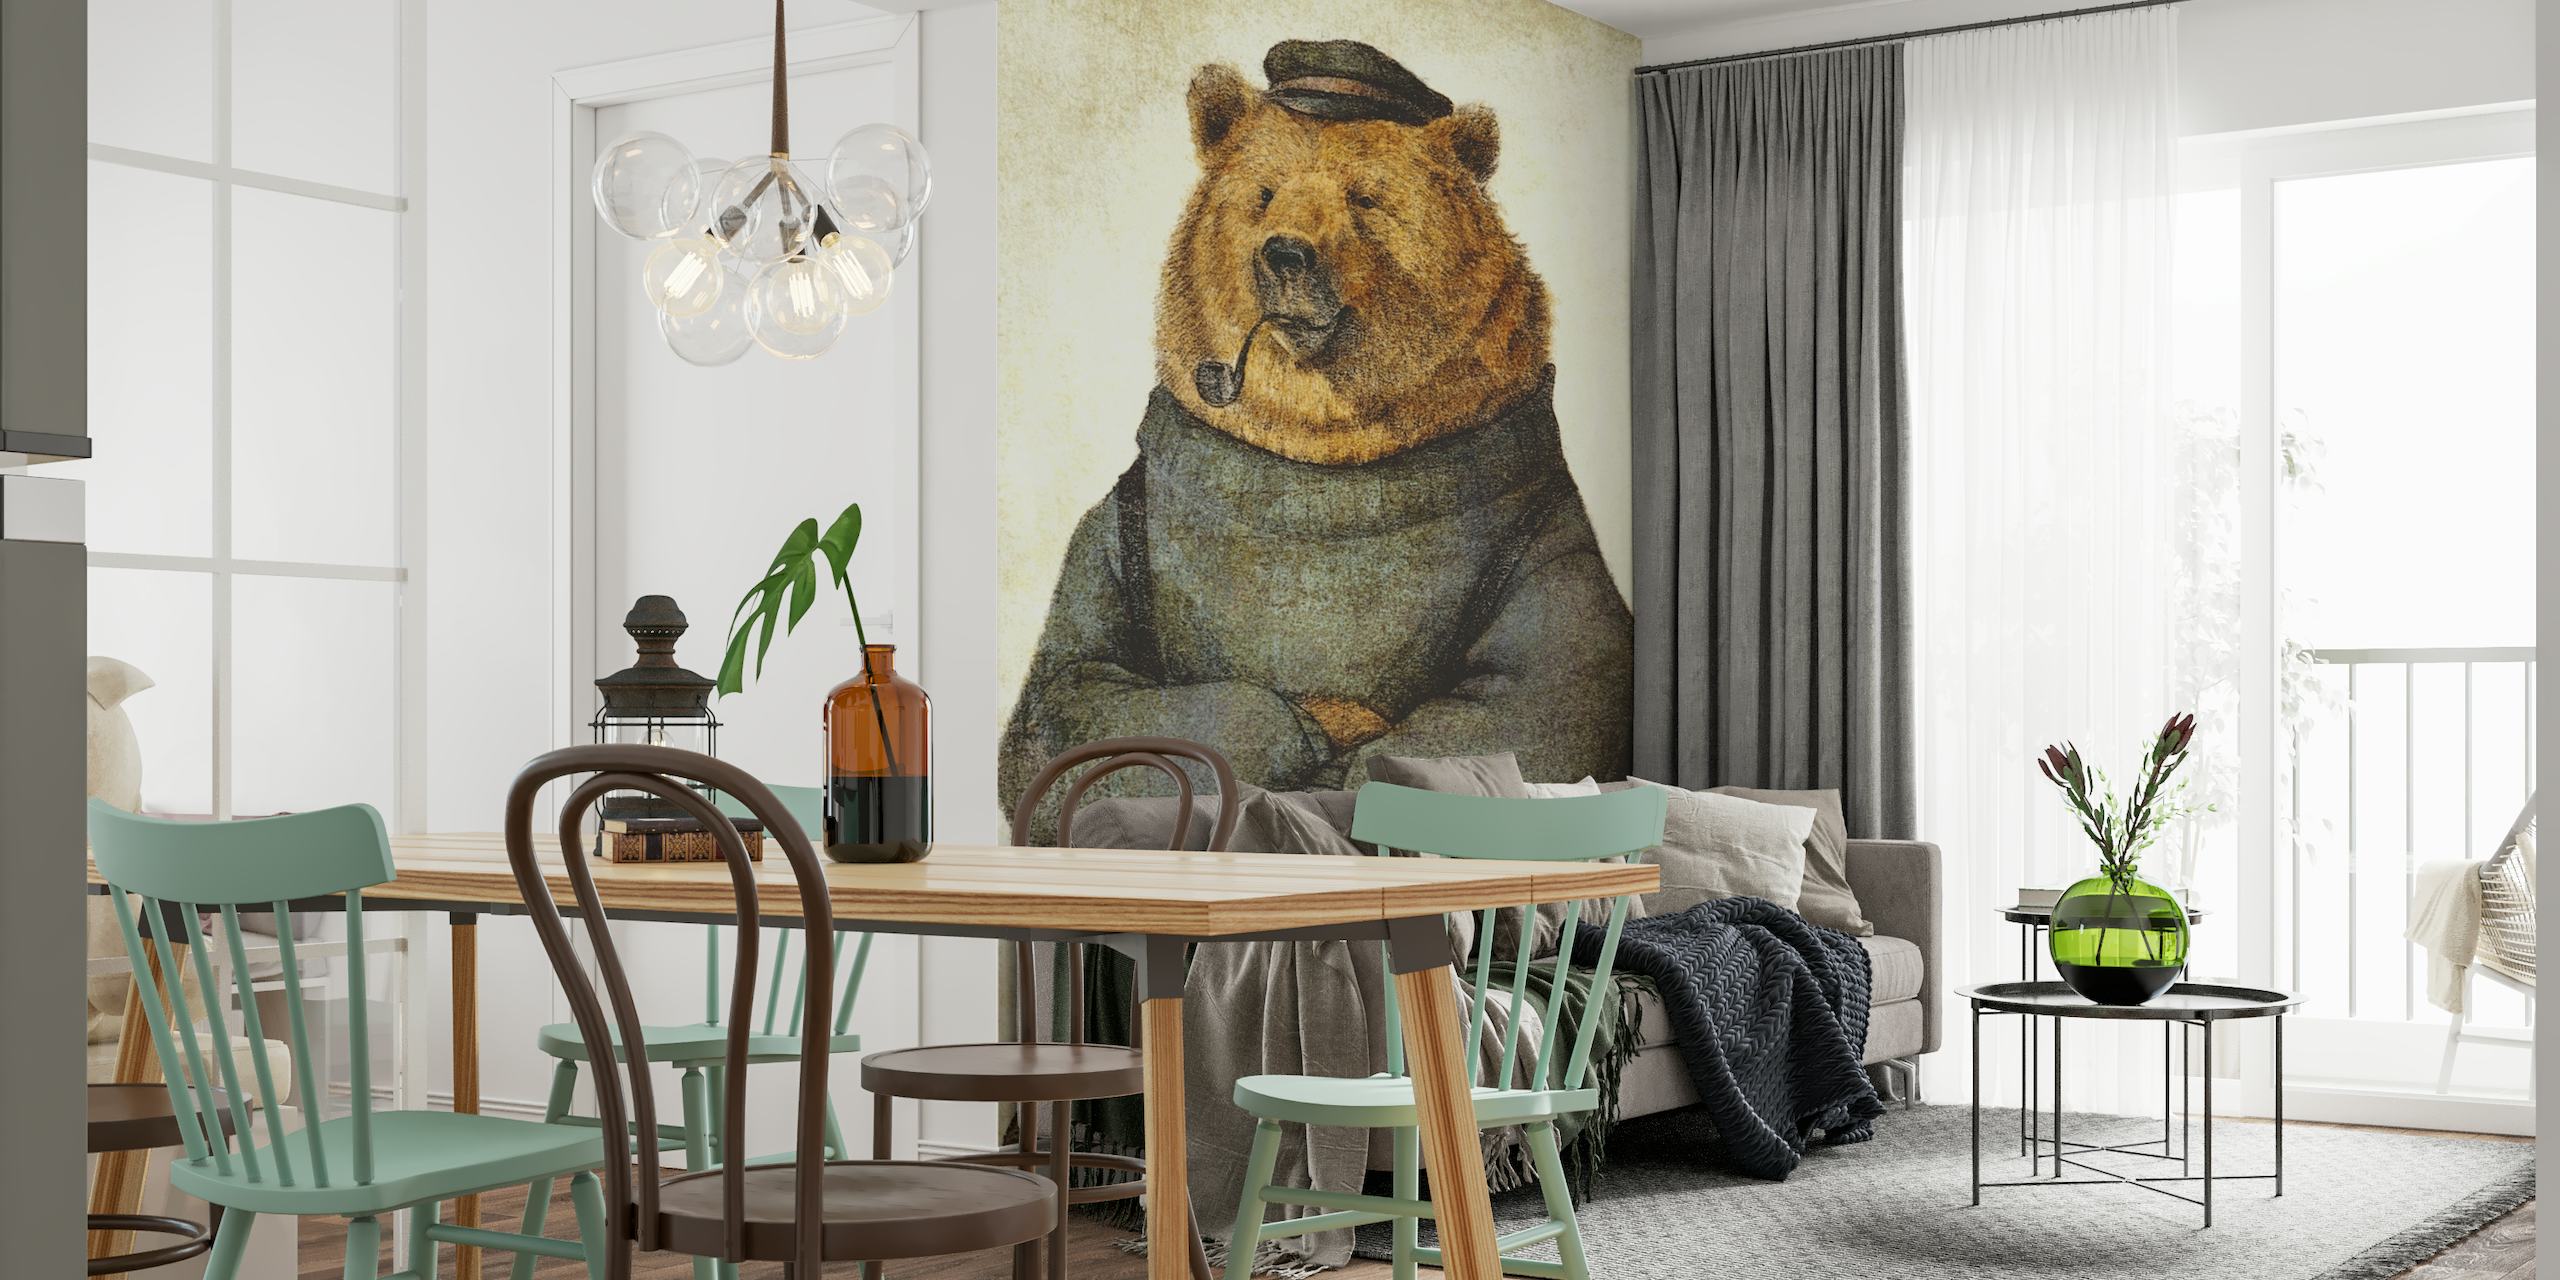 Illustration eines Bären, gekleidet als nachdenklicher Seemann mit Pfeife